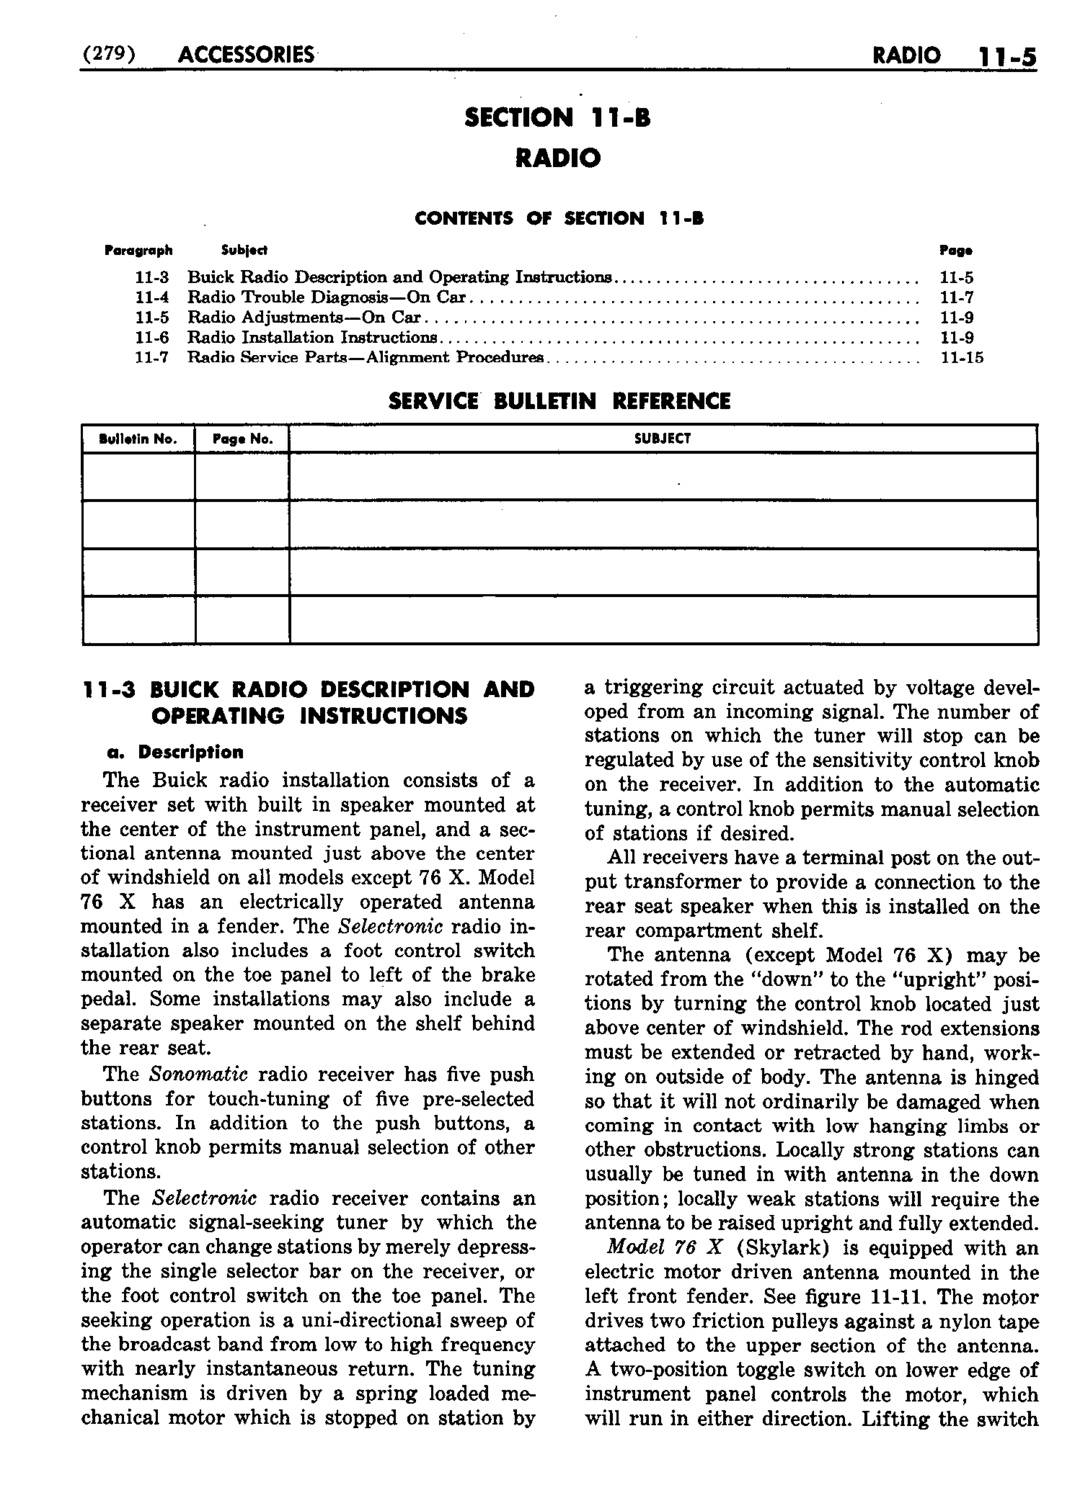 n_12 1953 Buick Shop Manual - Accessories-005-005.jpg